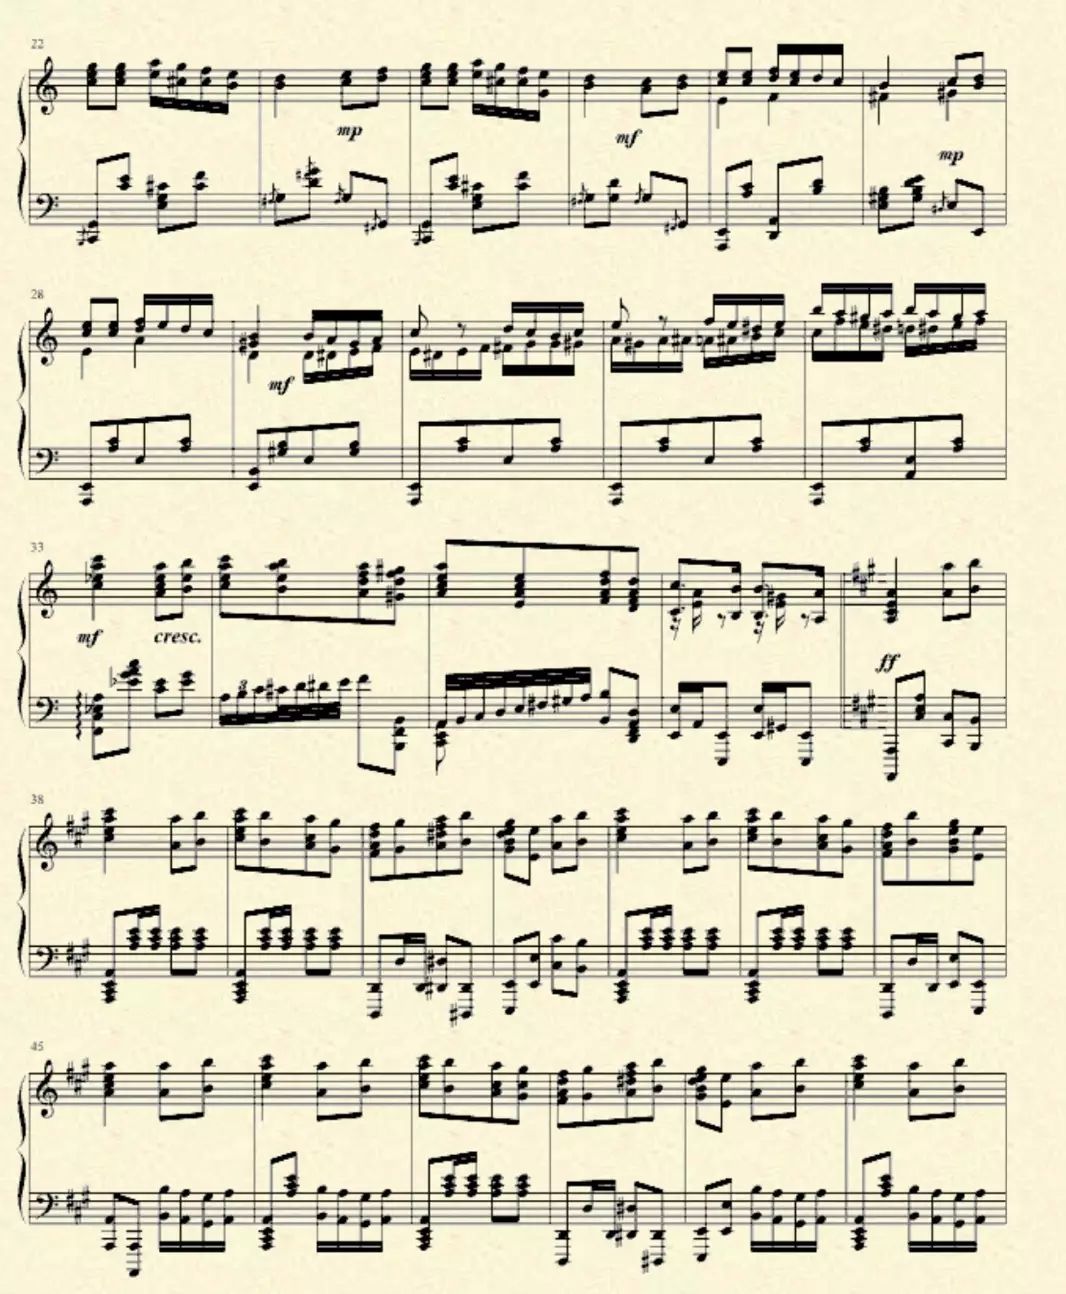 车尔尼流畅练习曲作品号849,里面的示范视频,就是当时少年时的王羽佳